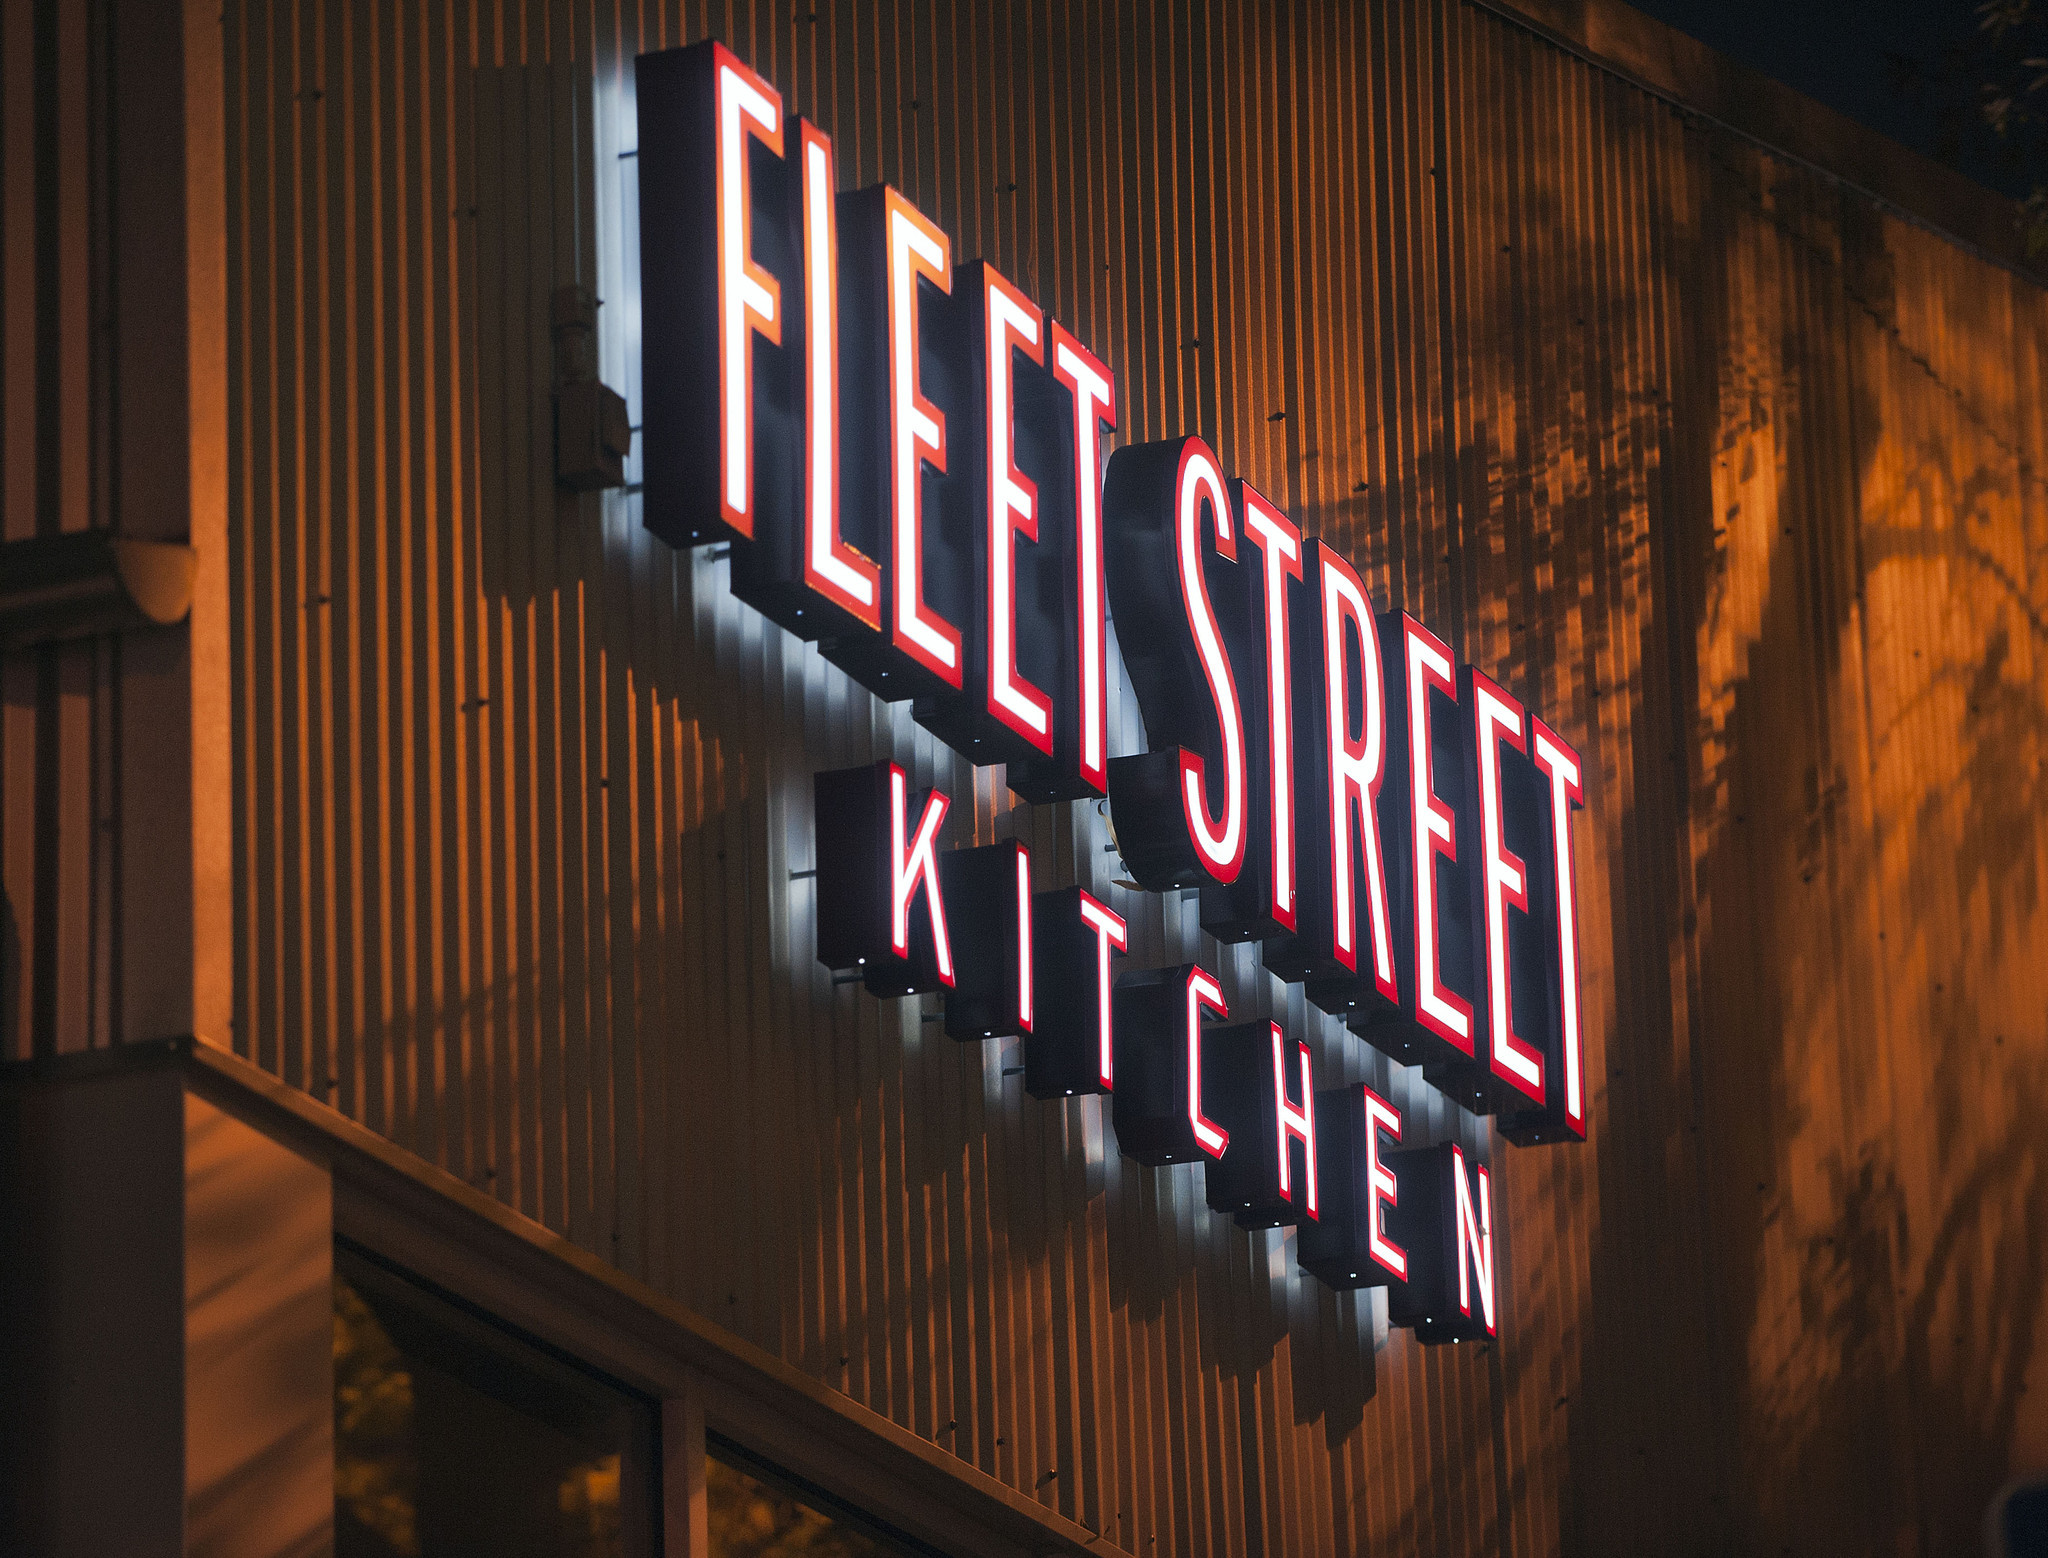 Fleet Street Kitchen Pictures Baltimore Sun